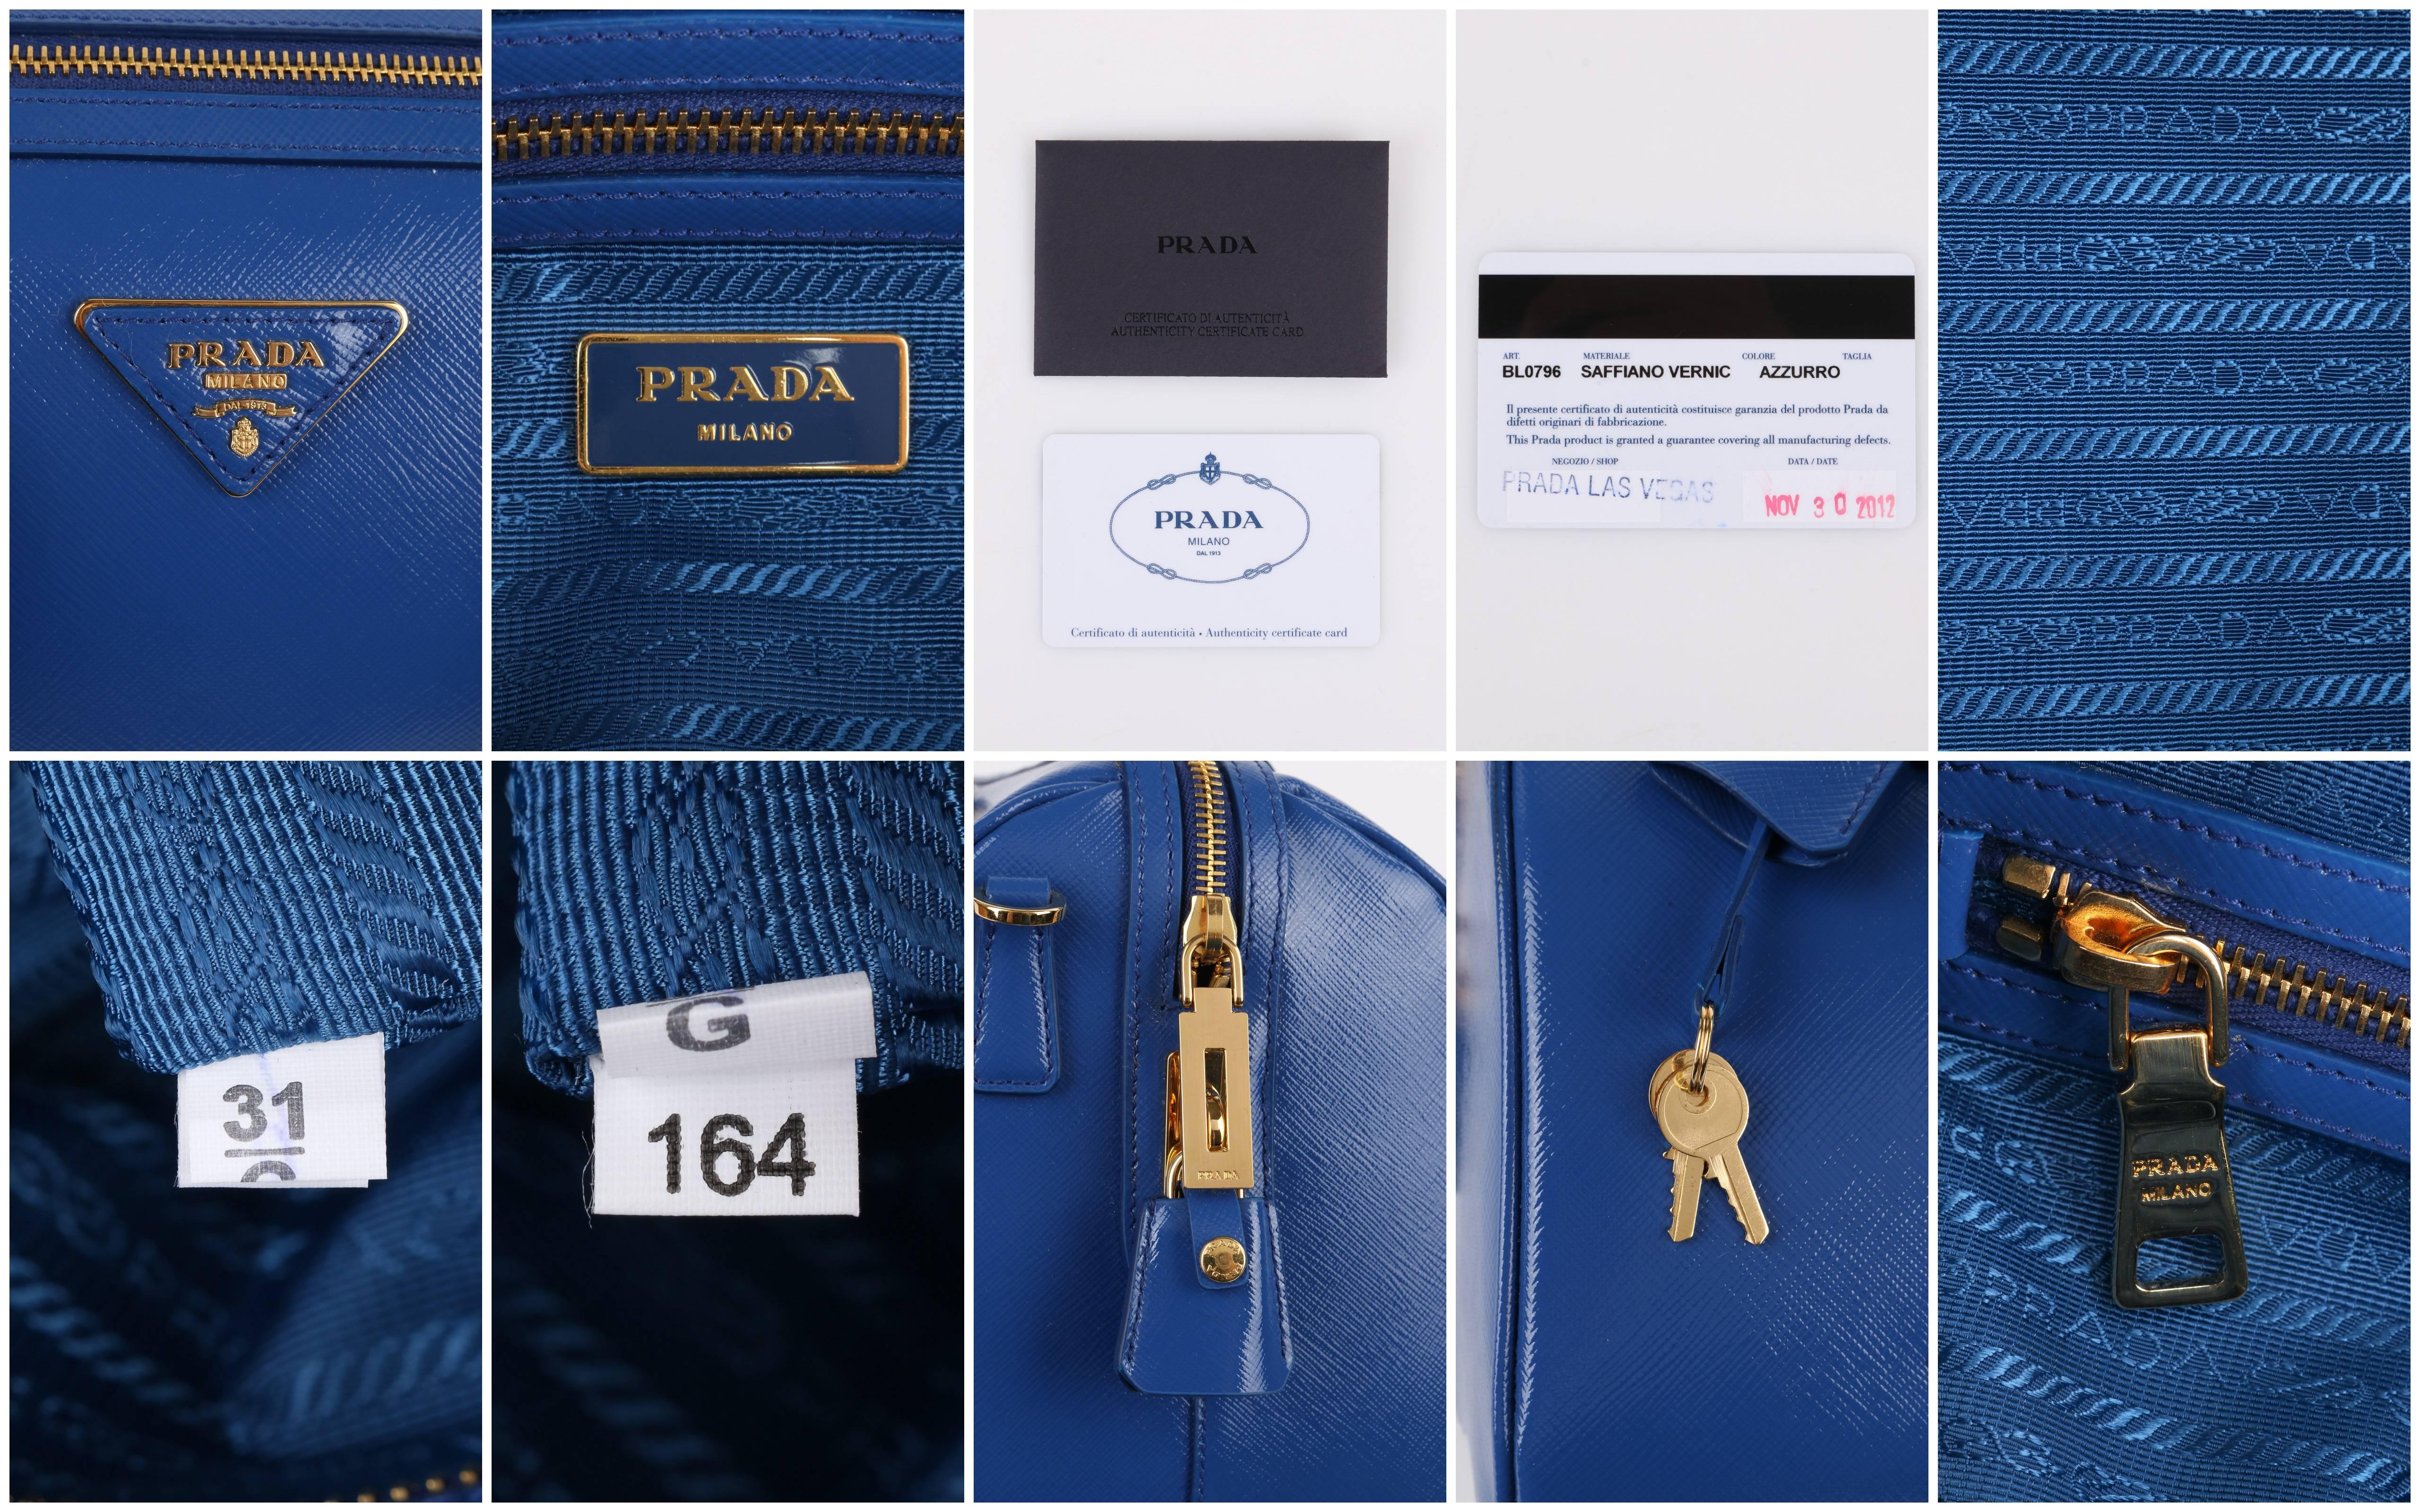 PRADA S/S 2012 Blue Saffiano Vernice Patent Leather Convertible Boston Bag Purse 2